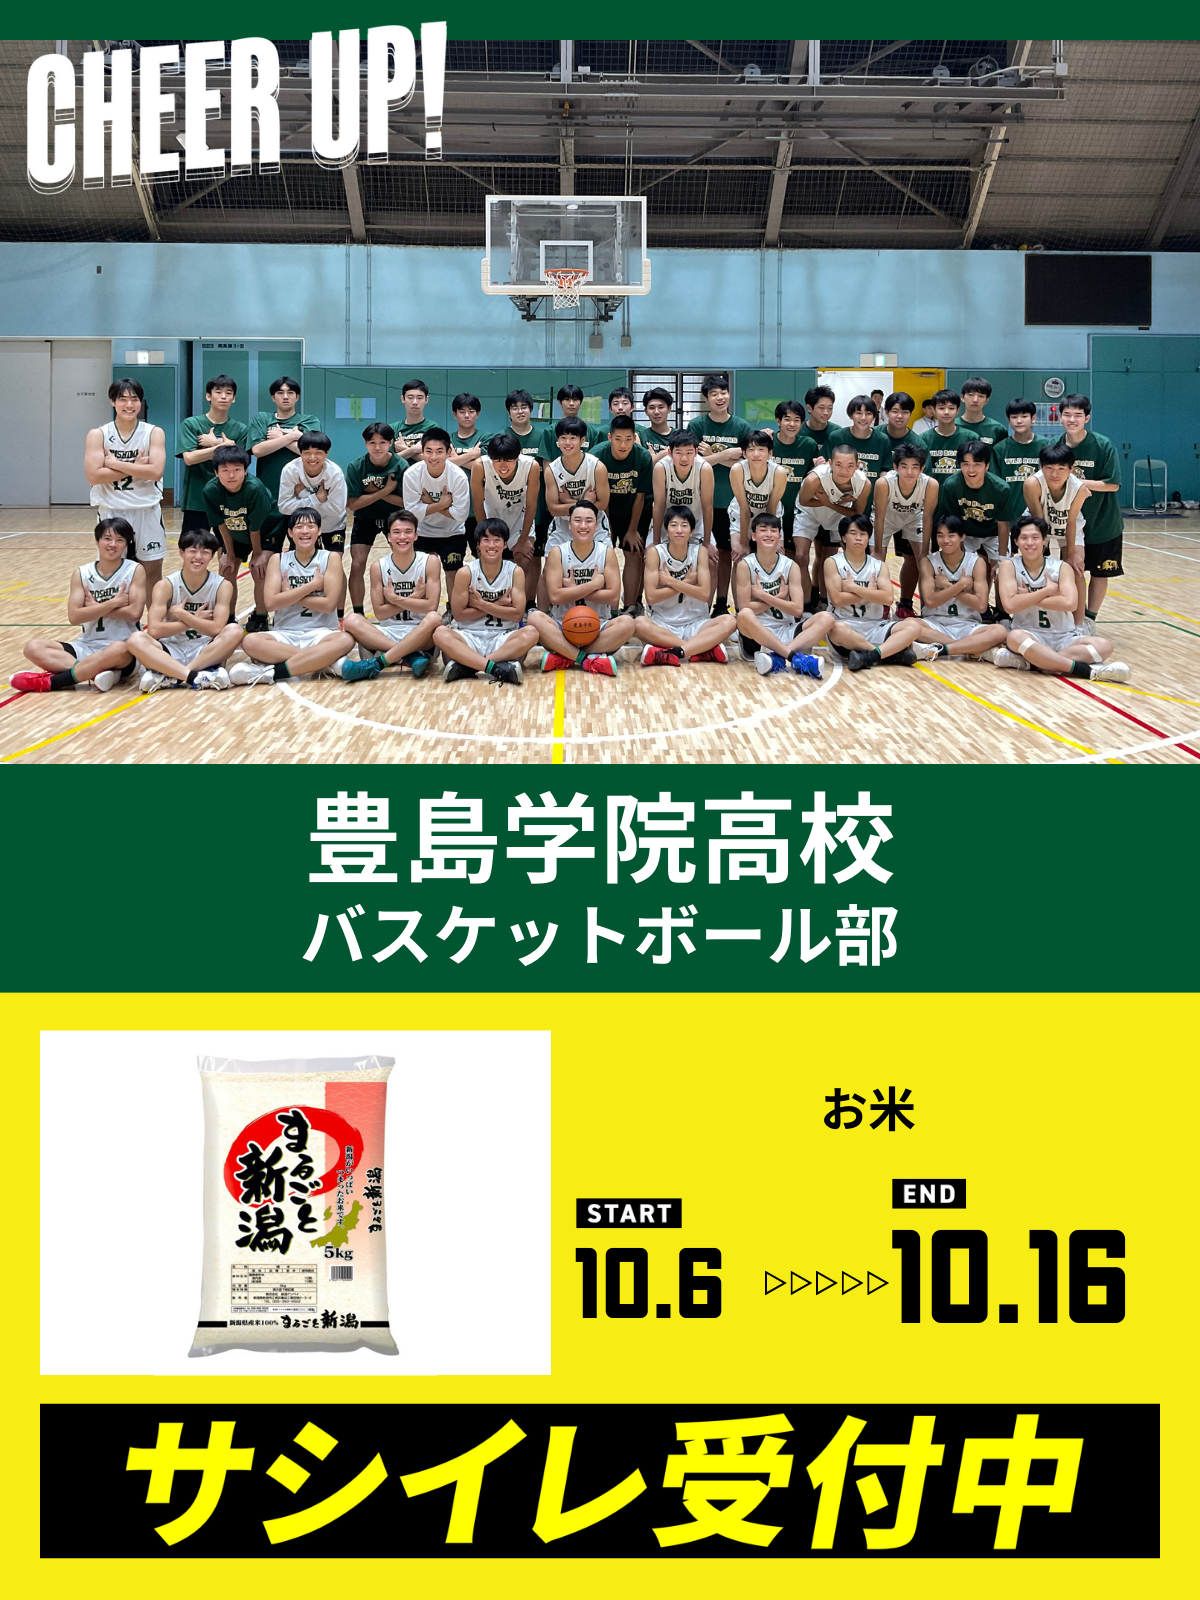 CHEER UP! for 豊島学院高校　バスケットボール部vol.2